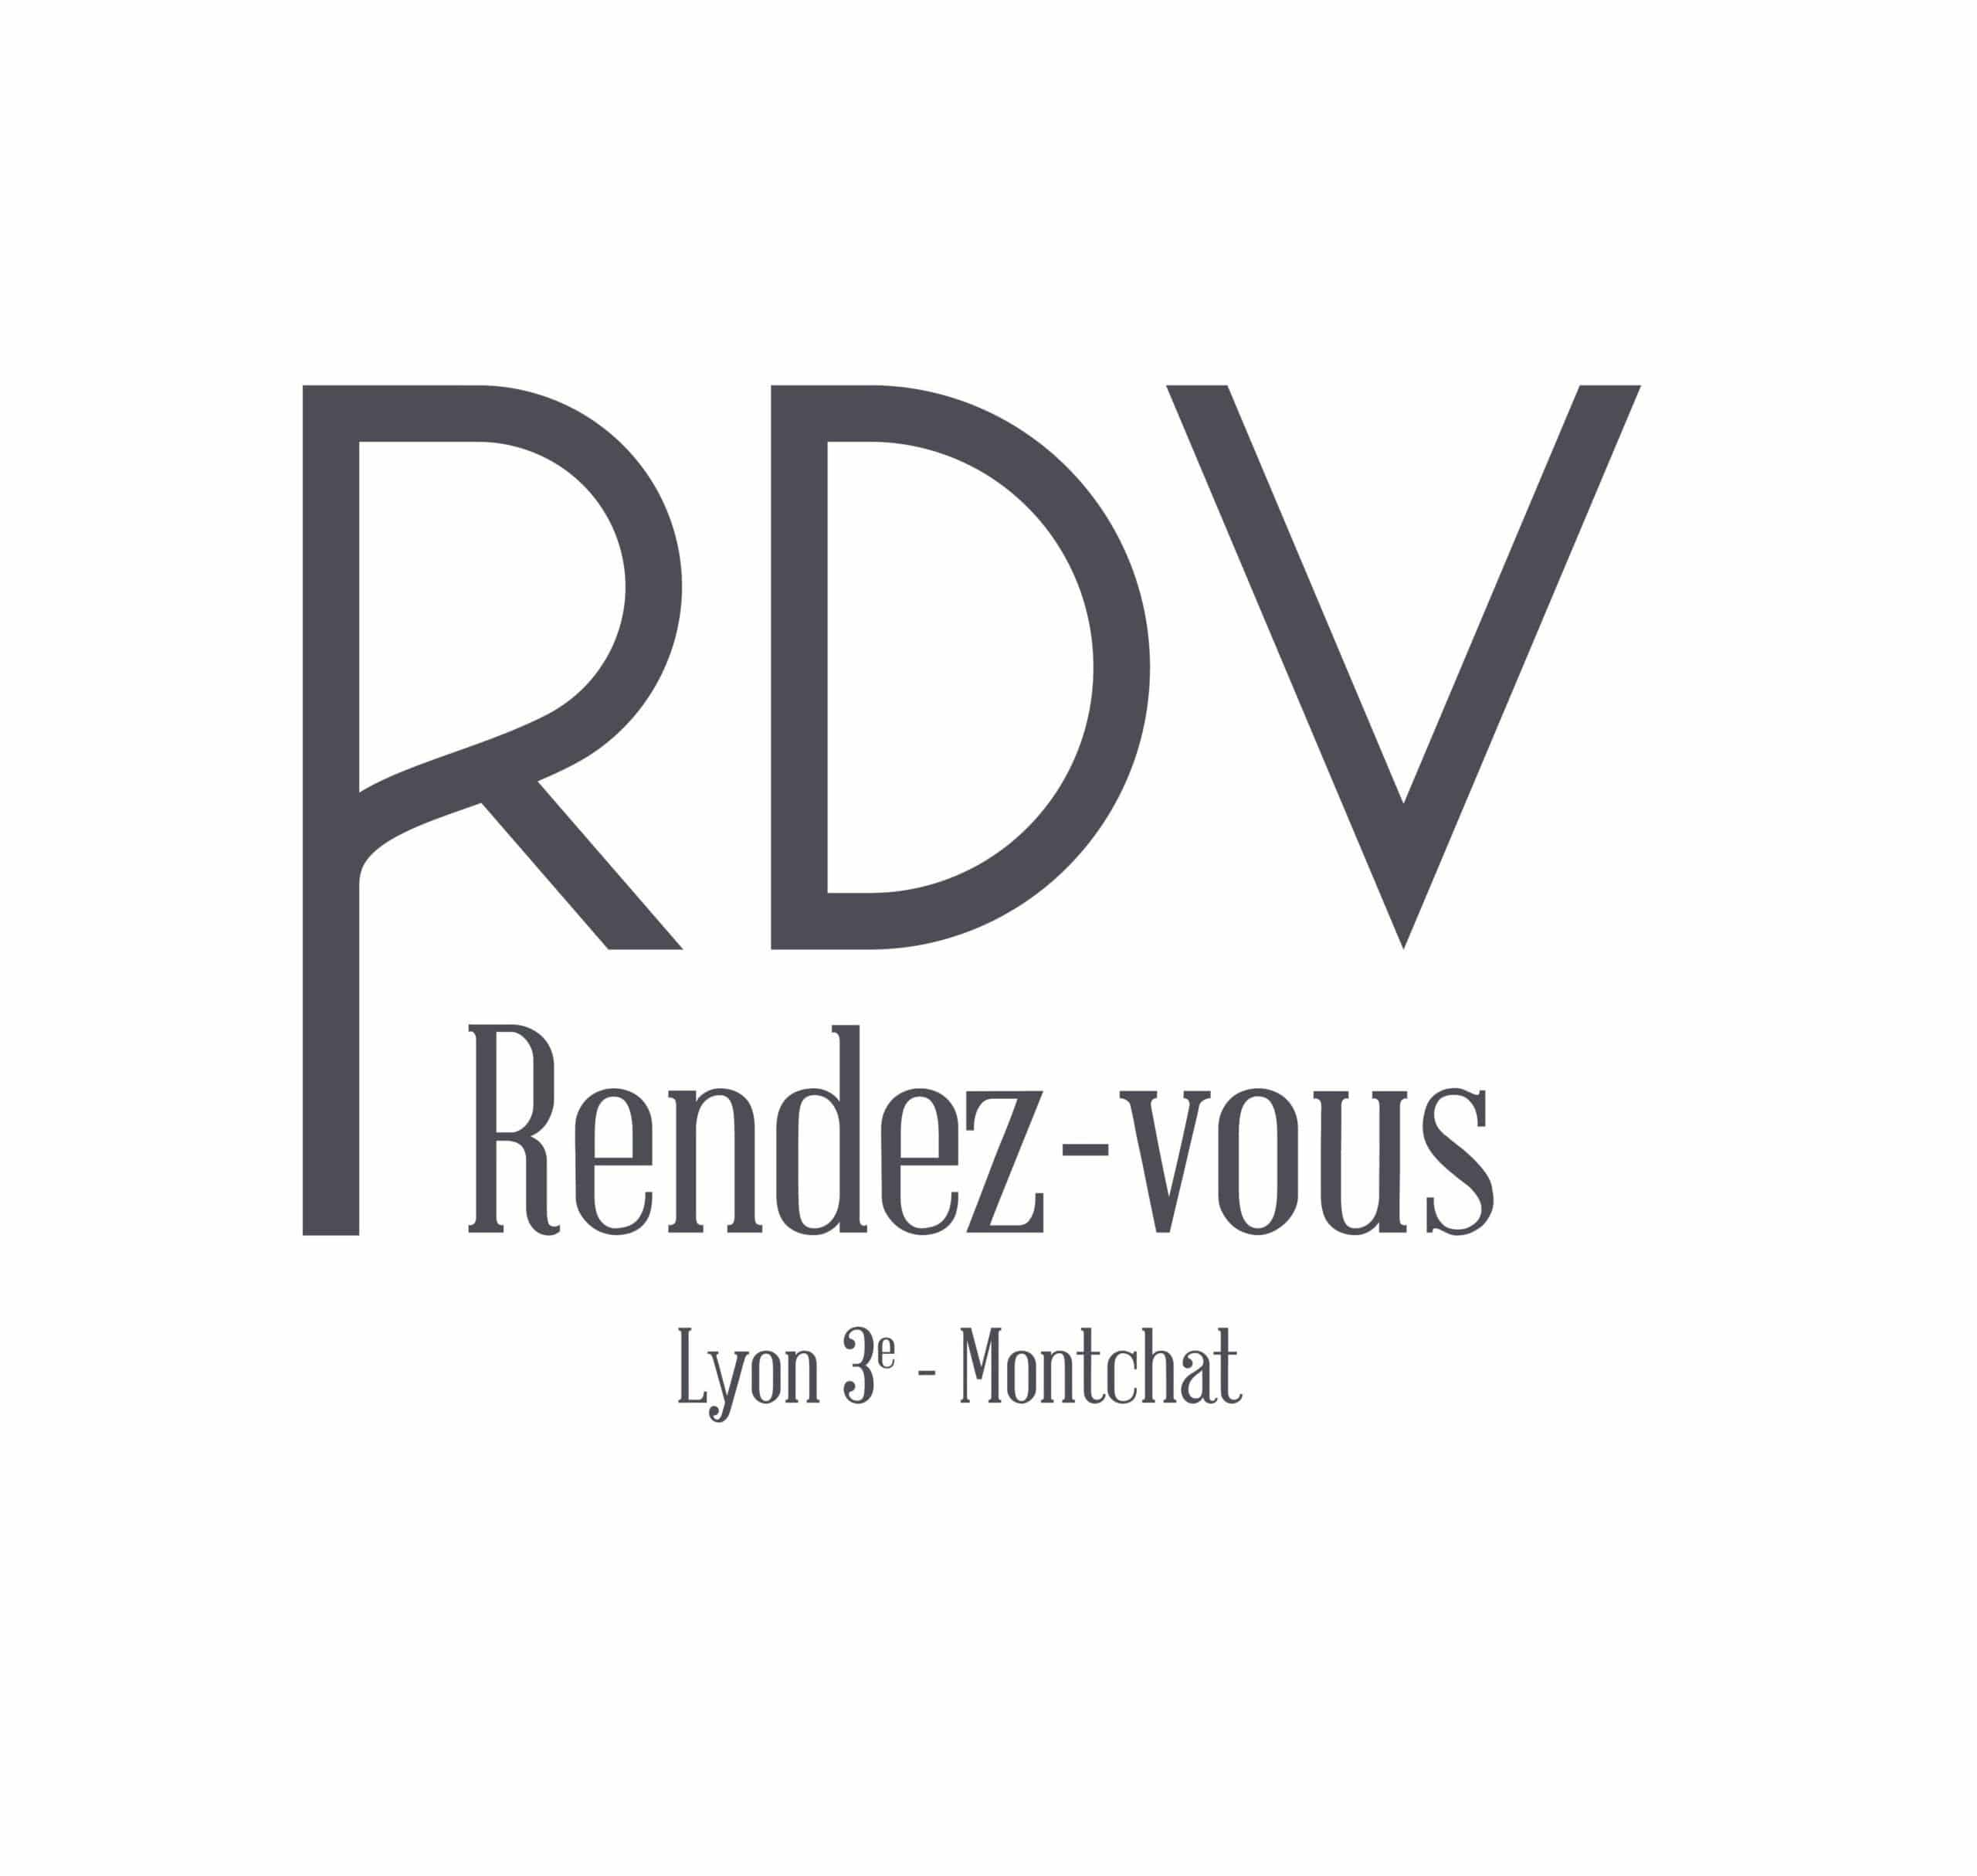 Programme immobilier Lyon 3ème Rendez-vous